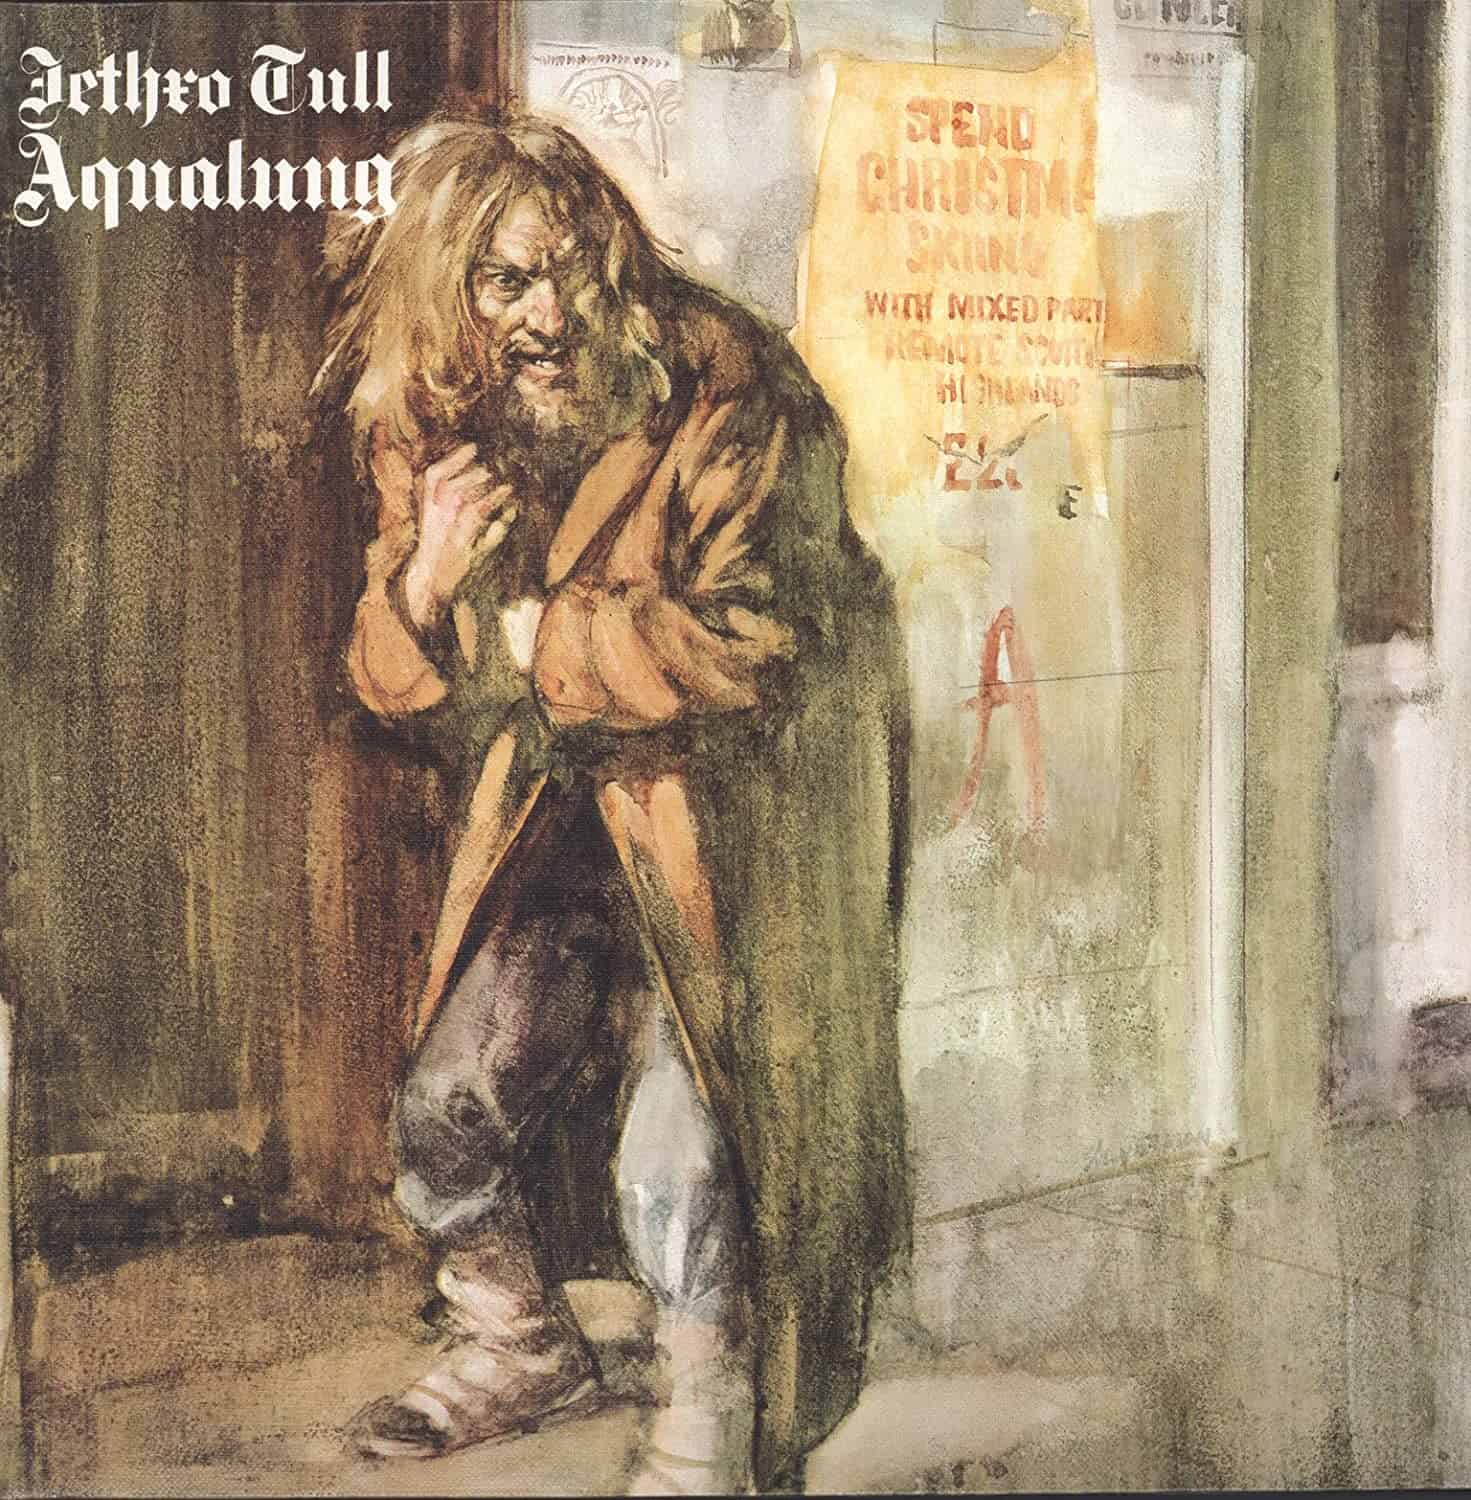 Jethro-Tull-Aqualung-vinyl-LP-record-album-front